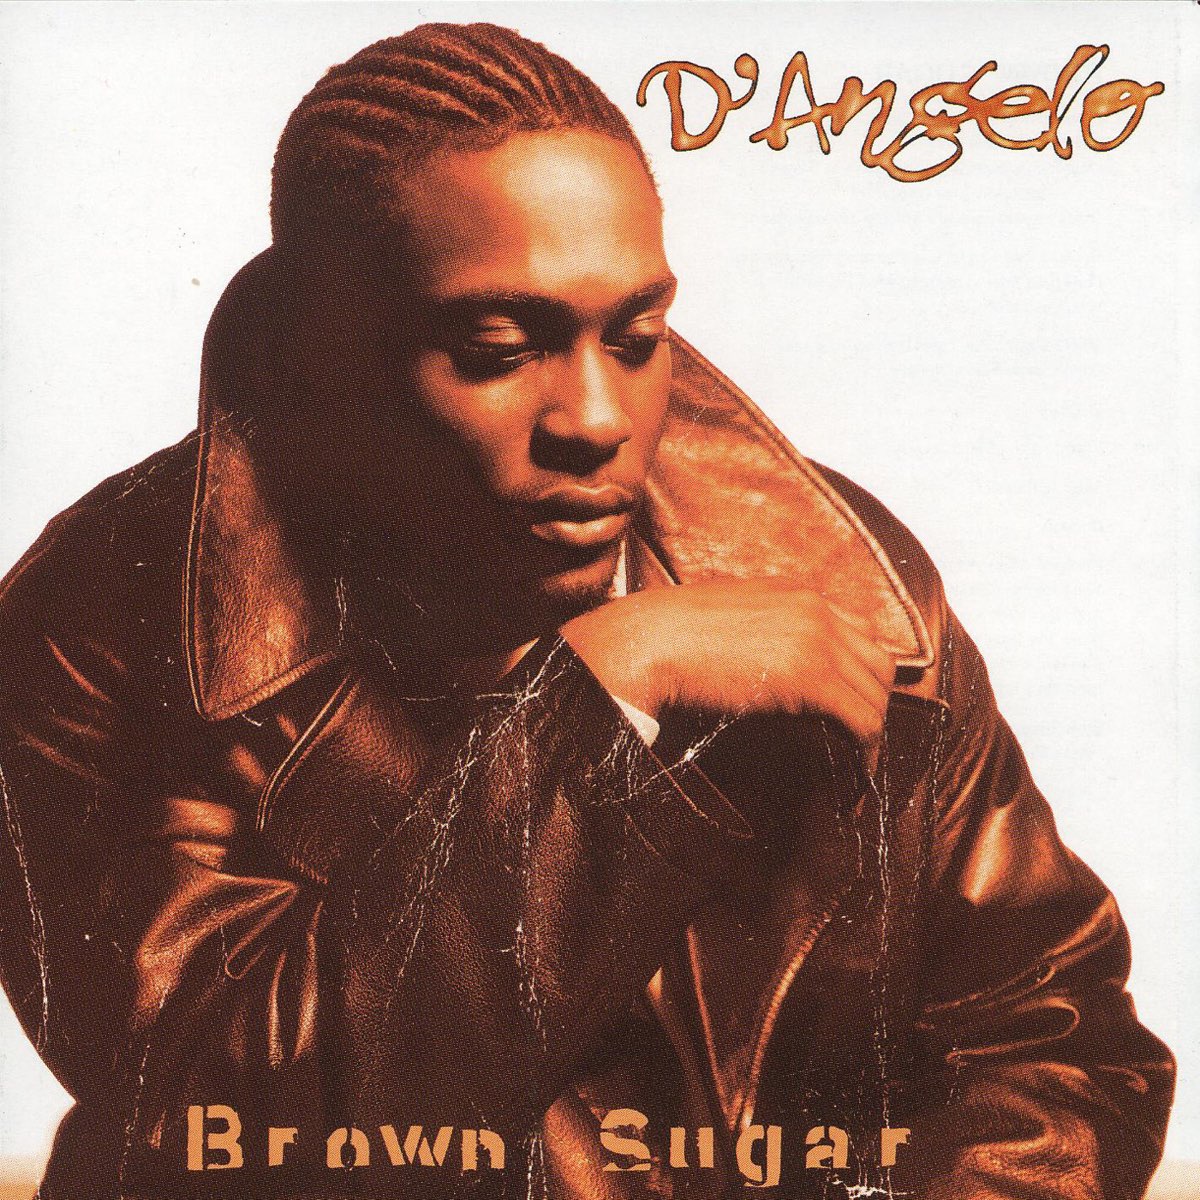 D'Angelo - Brown Sugar 2LP